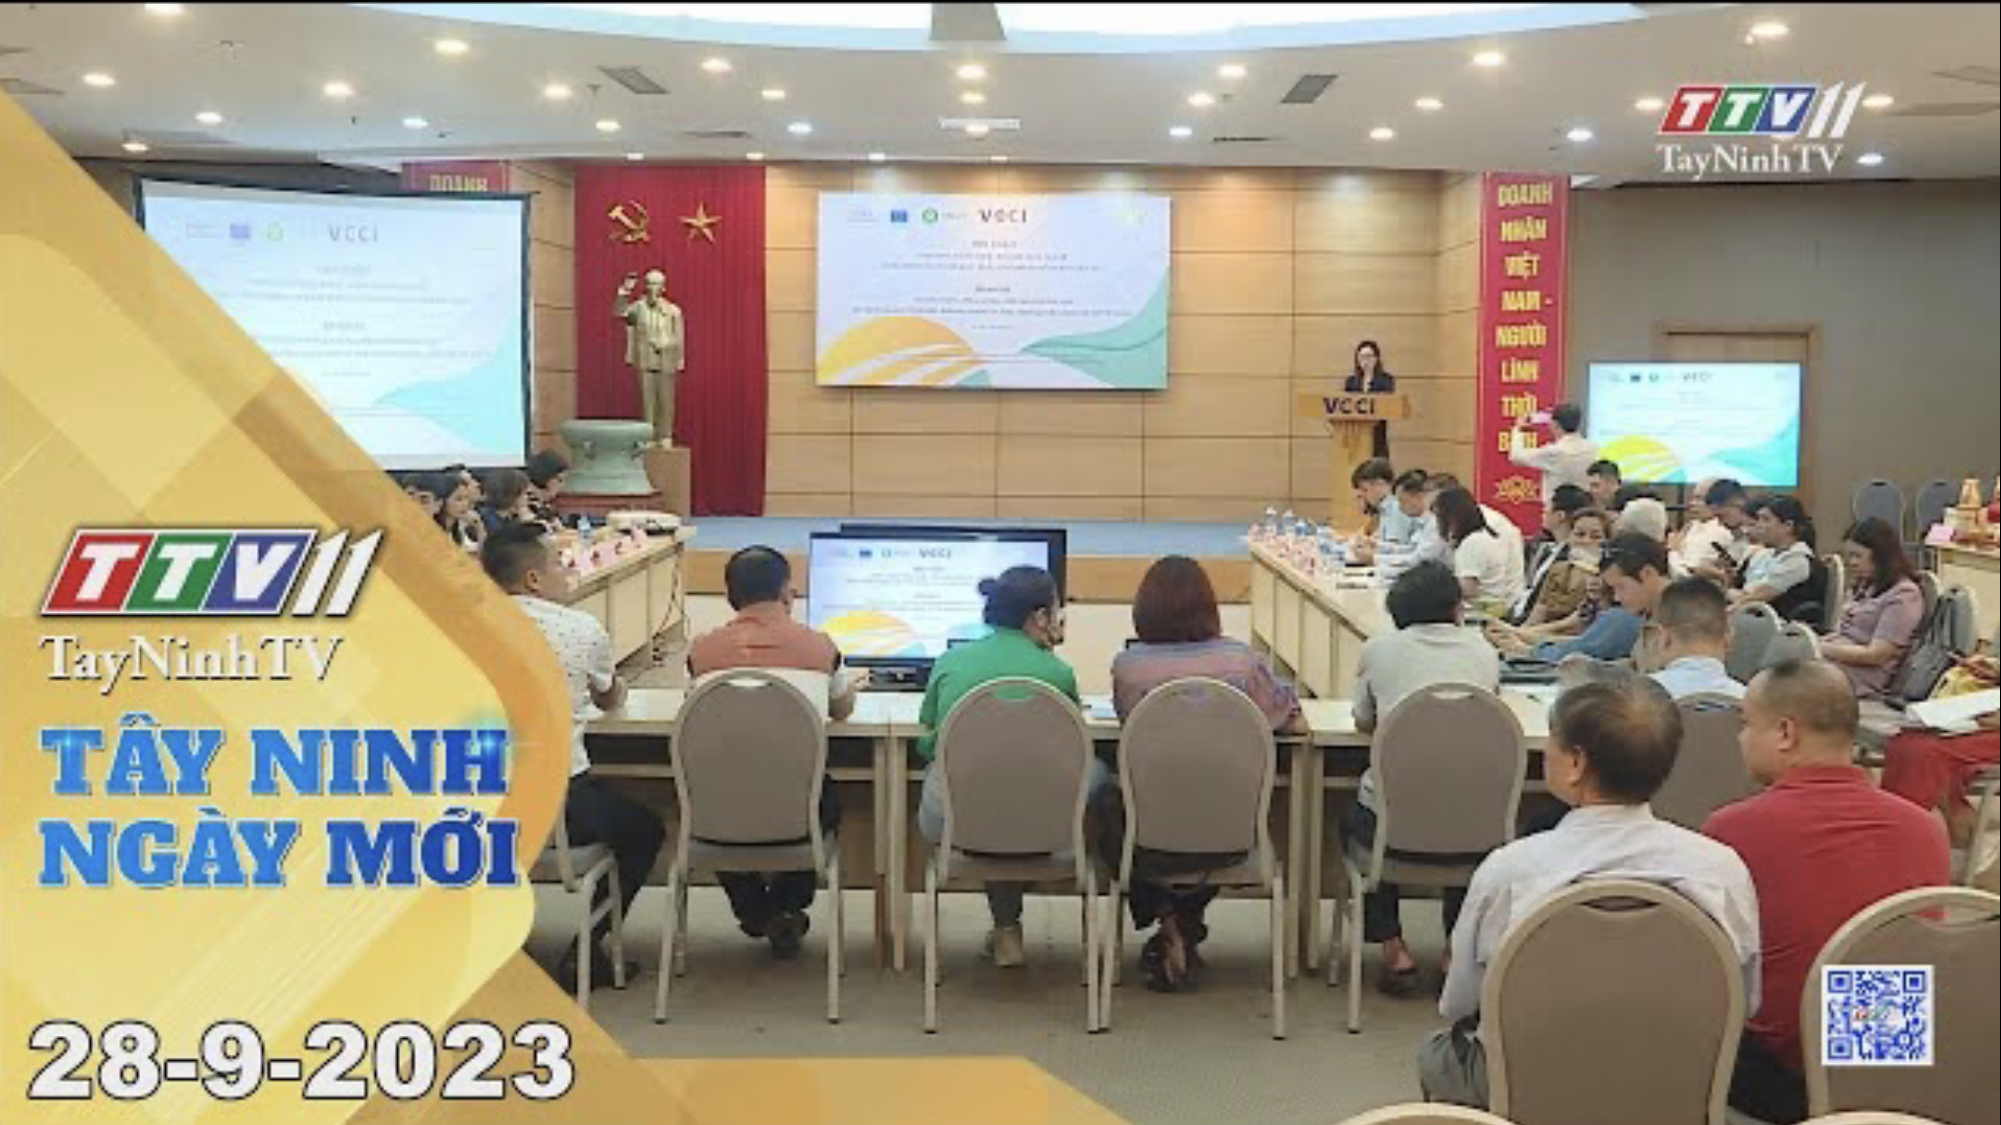 Tây Ninh ngày mới 28-9-2023 | Tin tức hôm nay | TayNinhTV